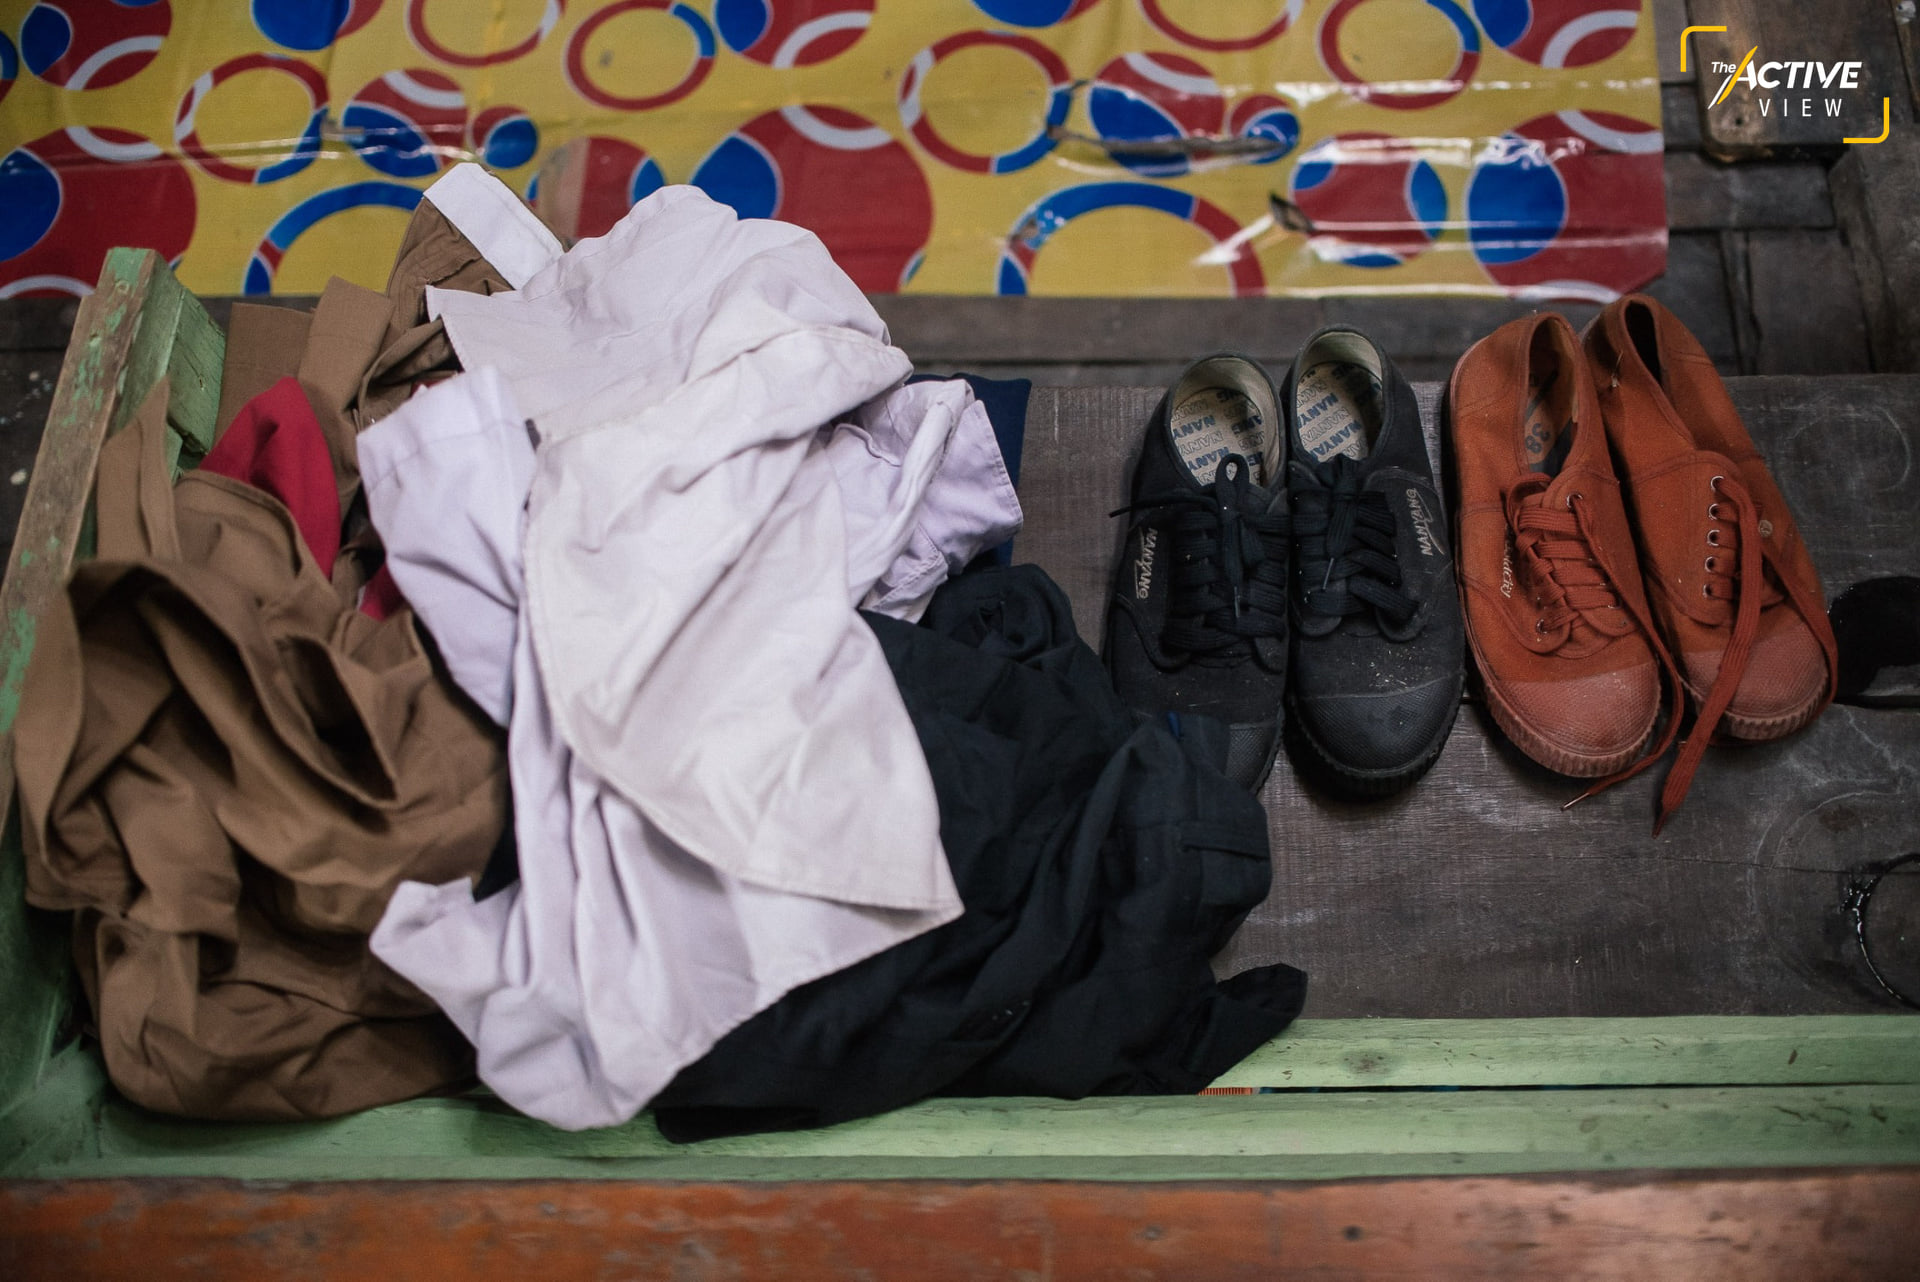 เสื้อนักเรียน 3 ตัว กับกางเกง 1 ตัว พร้อมด้วยชุดลูกเสือและรองเท้า ที่แม่ซื้อเผื่อไซส์ไว้ให้ตั้งแต่ ป.1